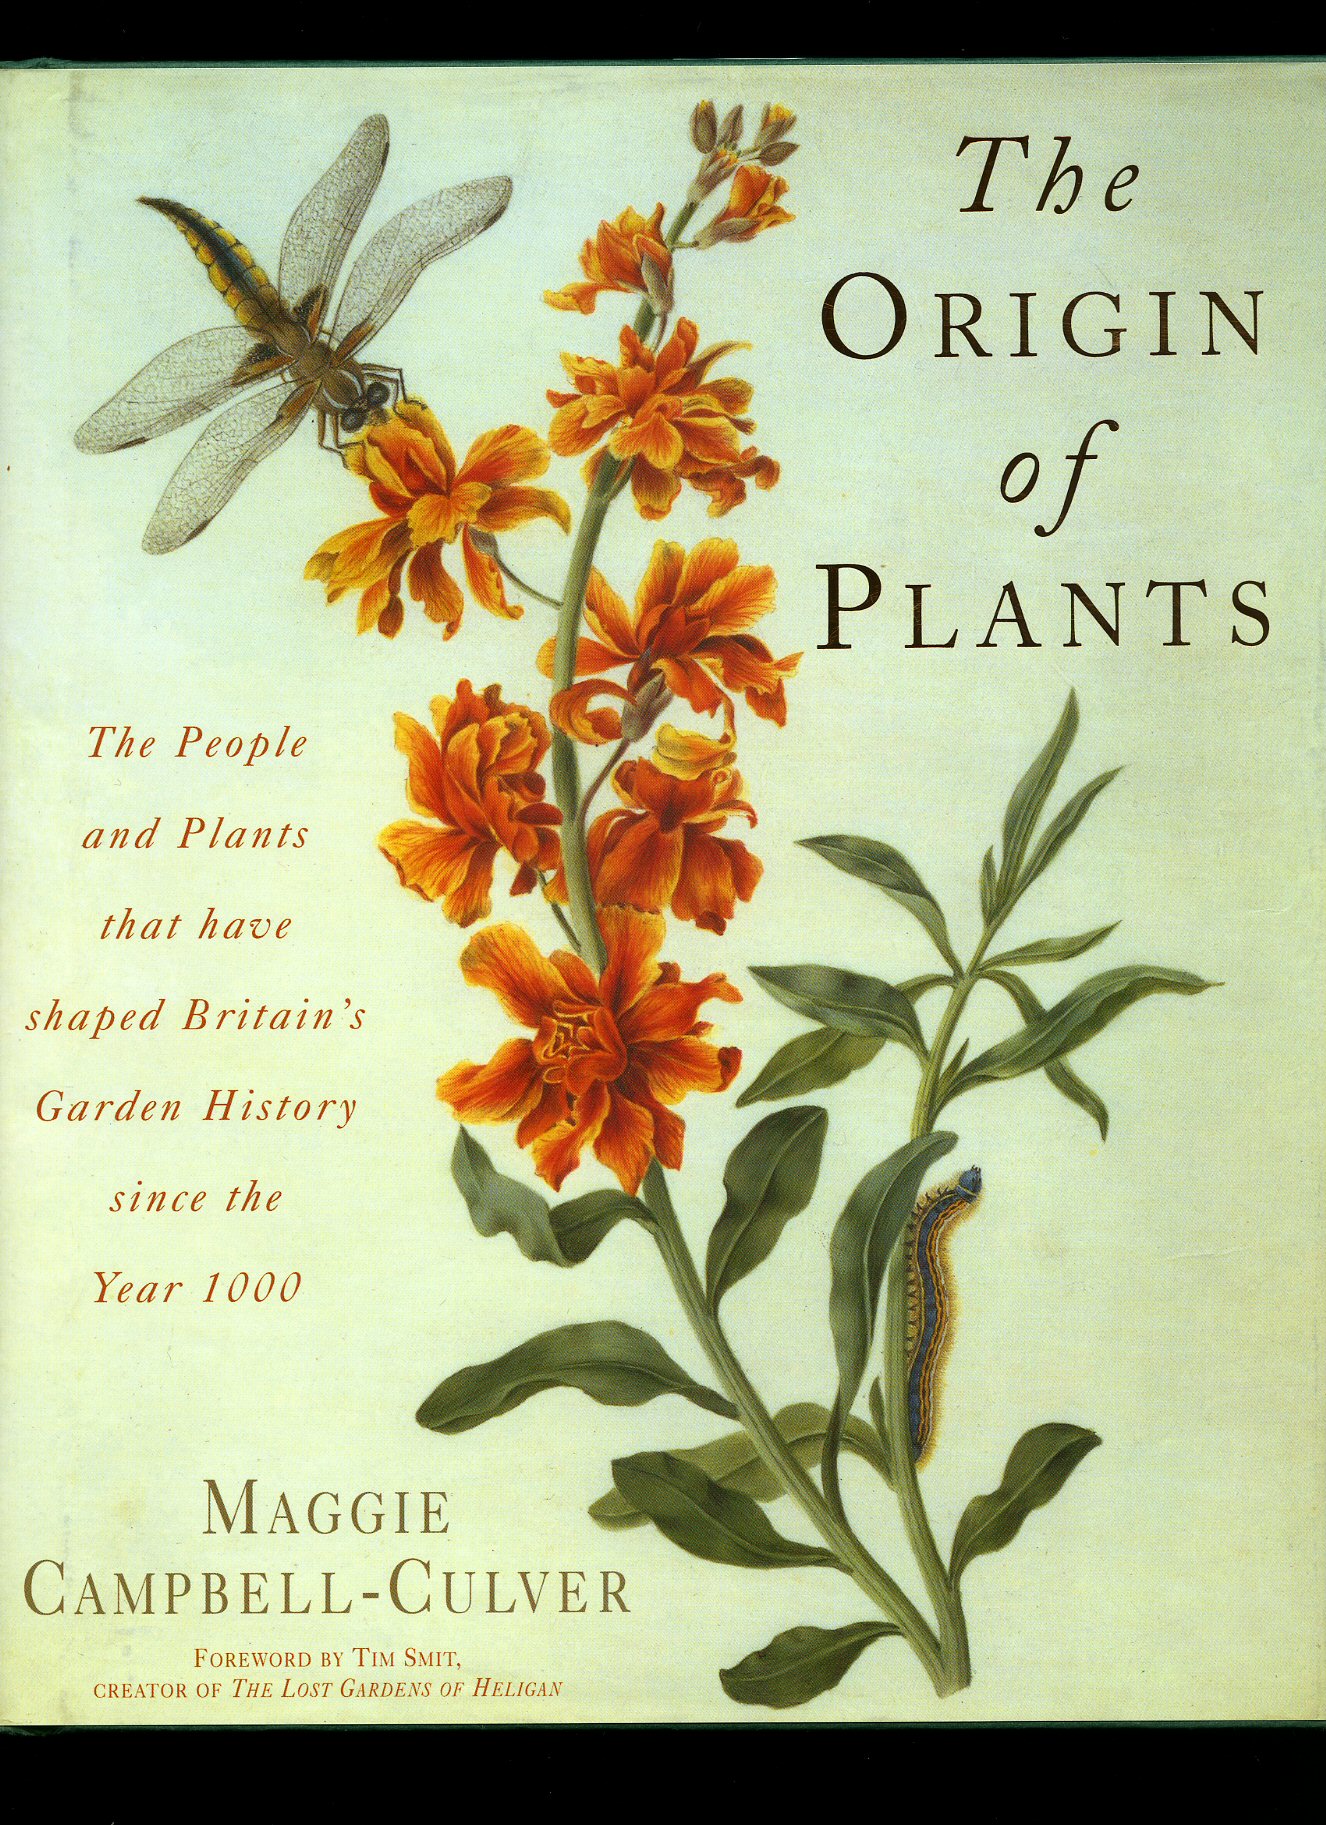 Plants story. Gardens Britains книга. Plant people перевод.